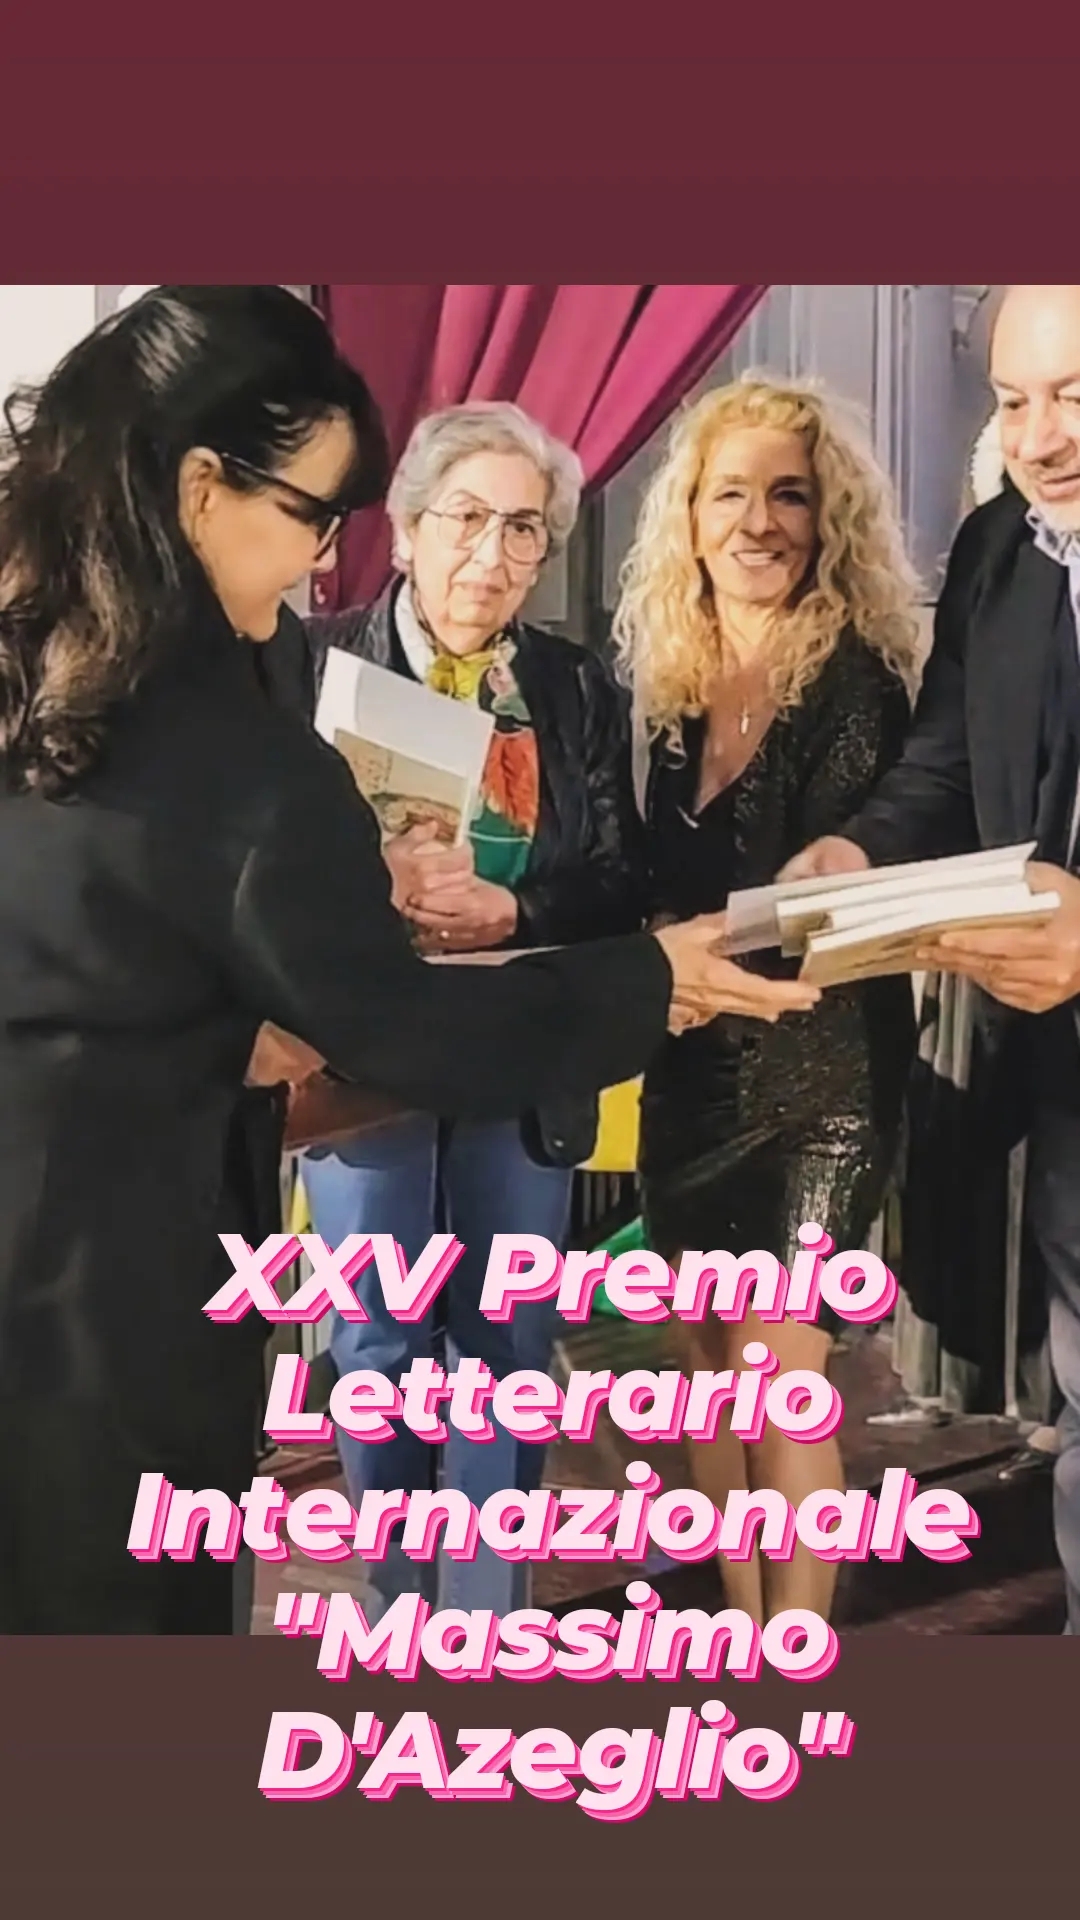 XXV Premio Letterario Internazionale “Massimo D’Azeglio”, Barletta.